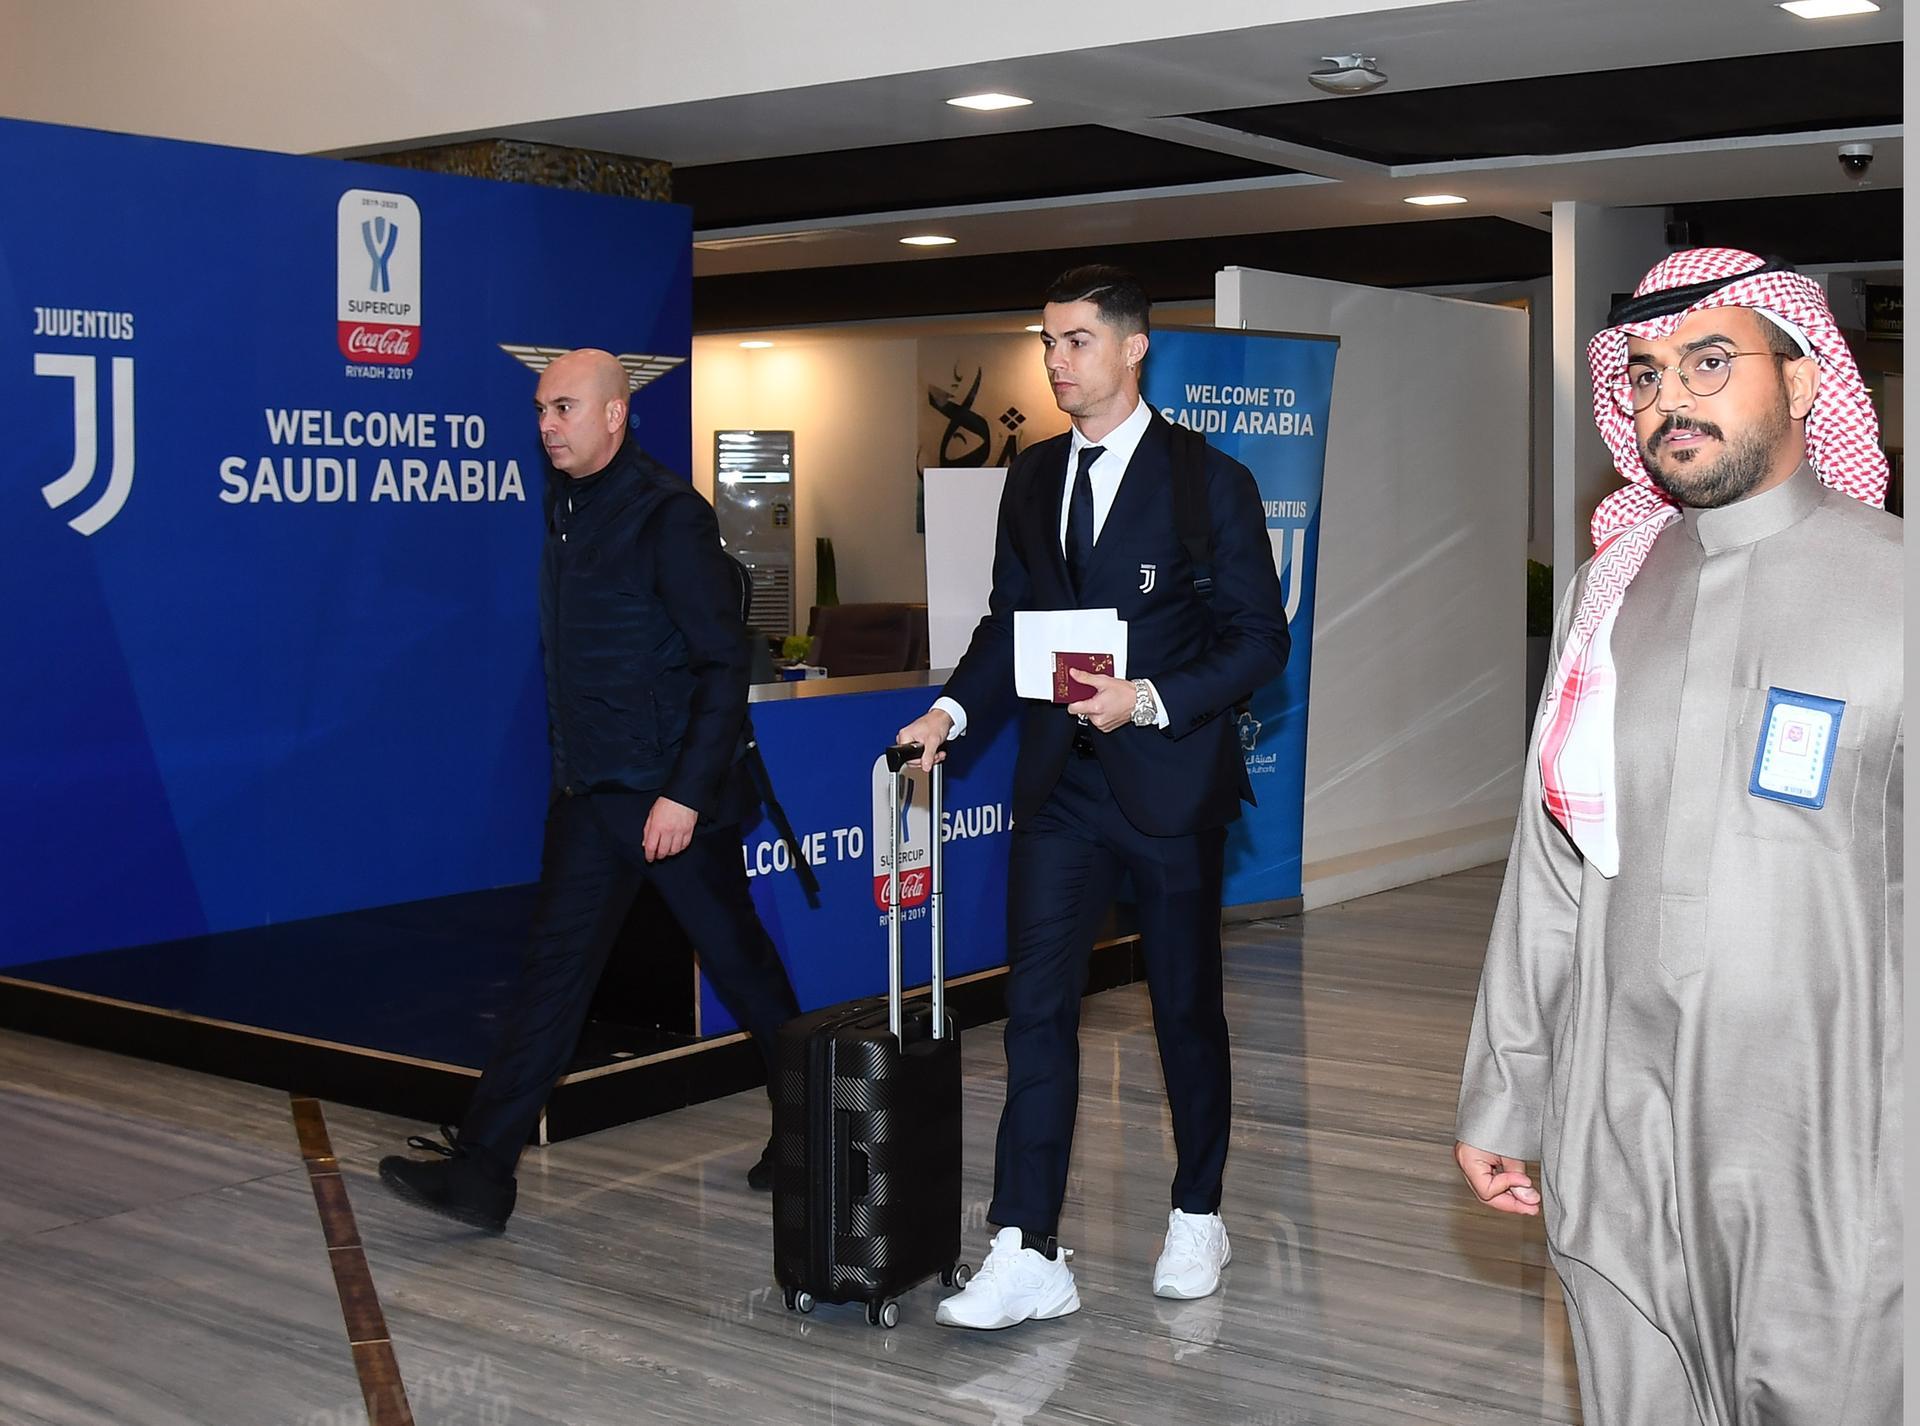 Cristiano Ronaldo drips in diamonds at Dubai sports conference